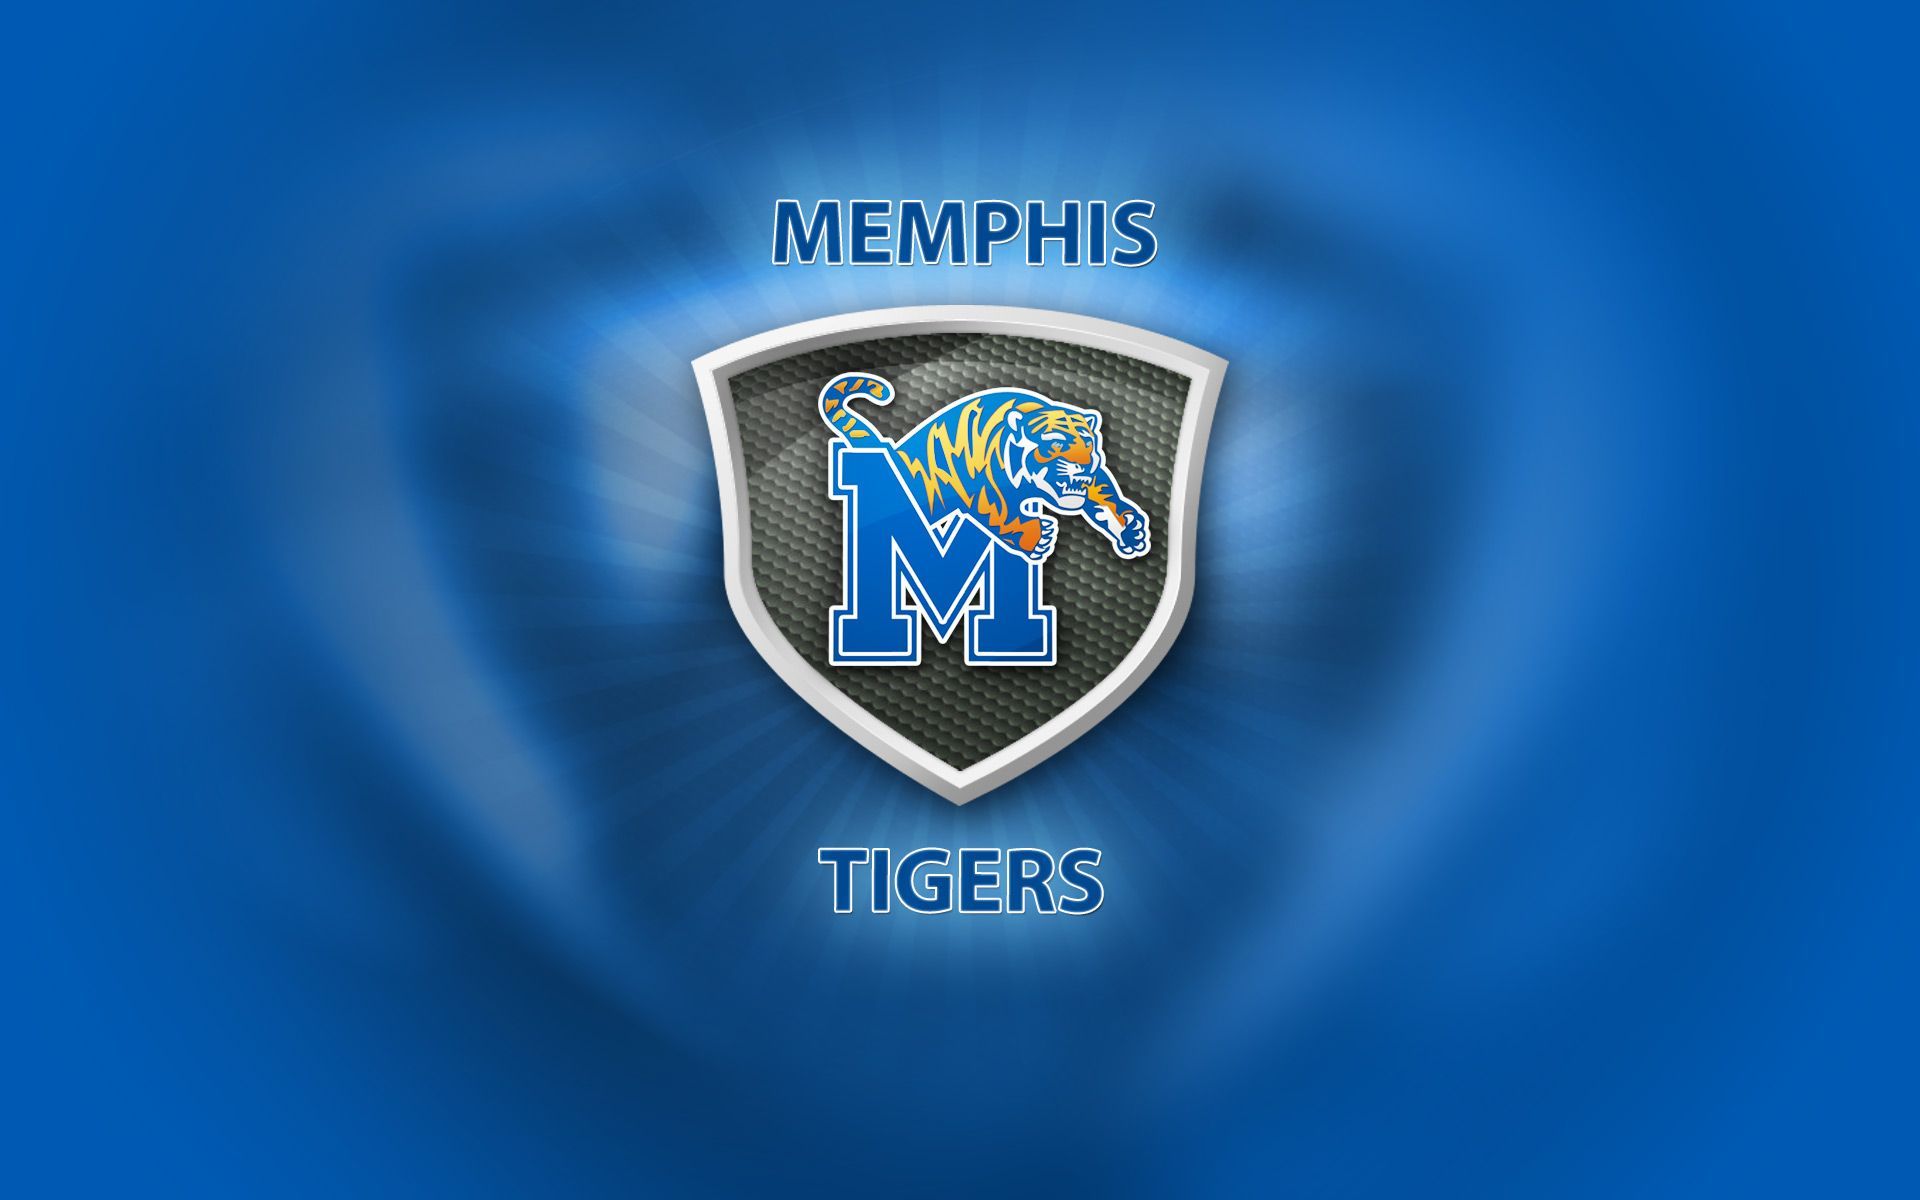 Memphis Tigers Wallpaper. Memphis tigers, Memphis, Football